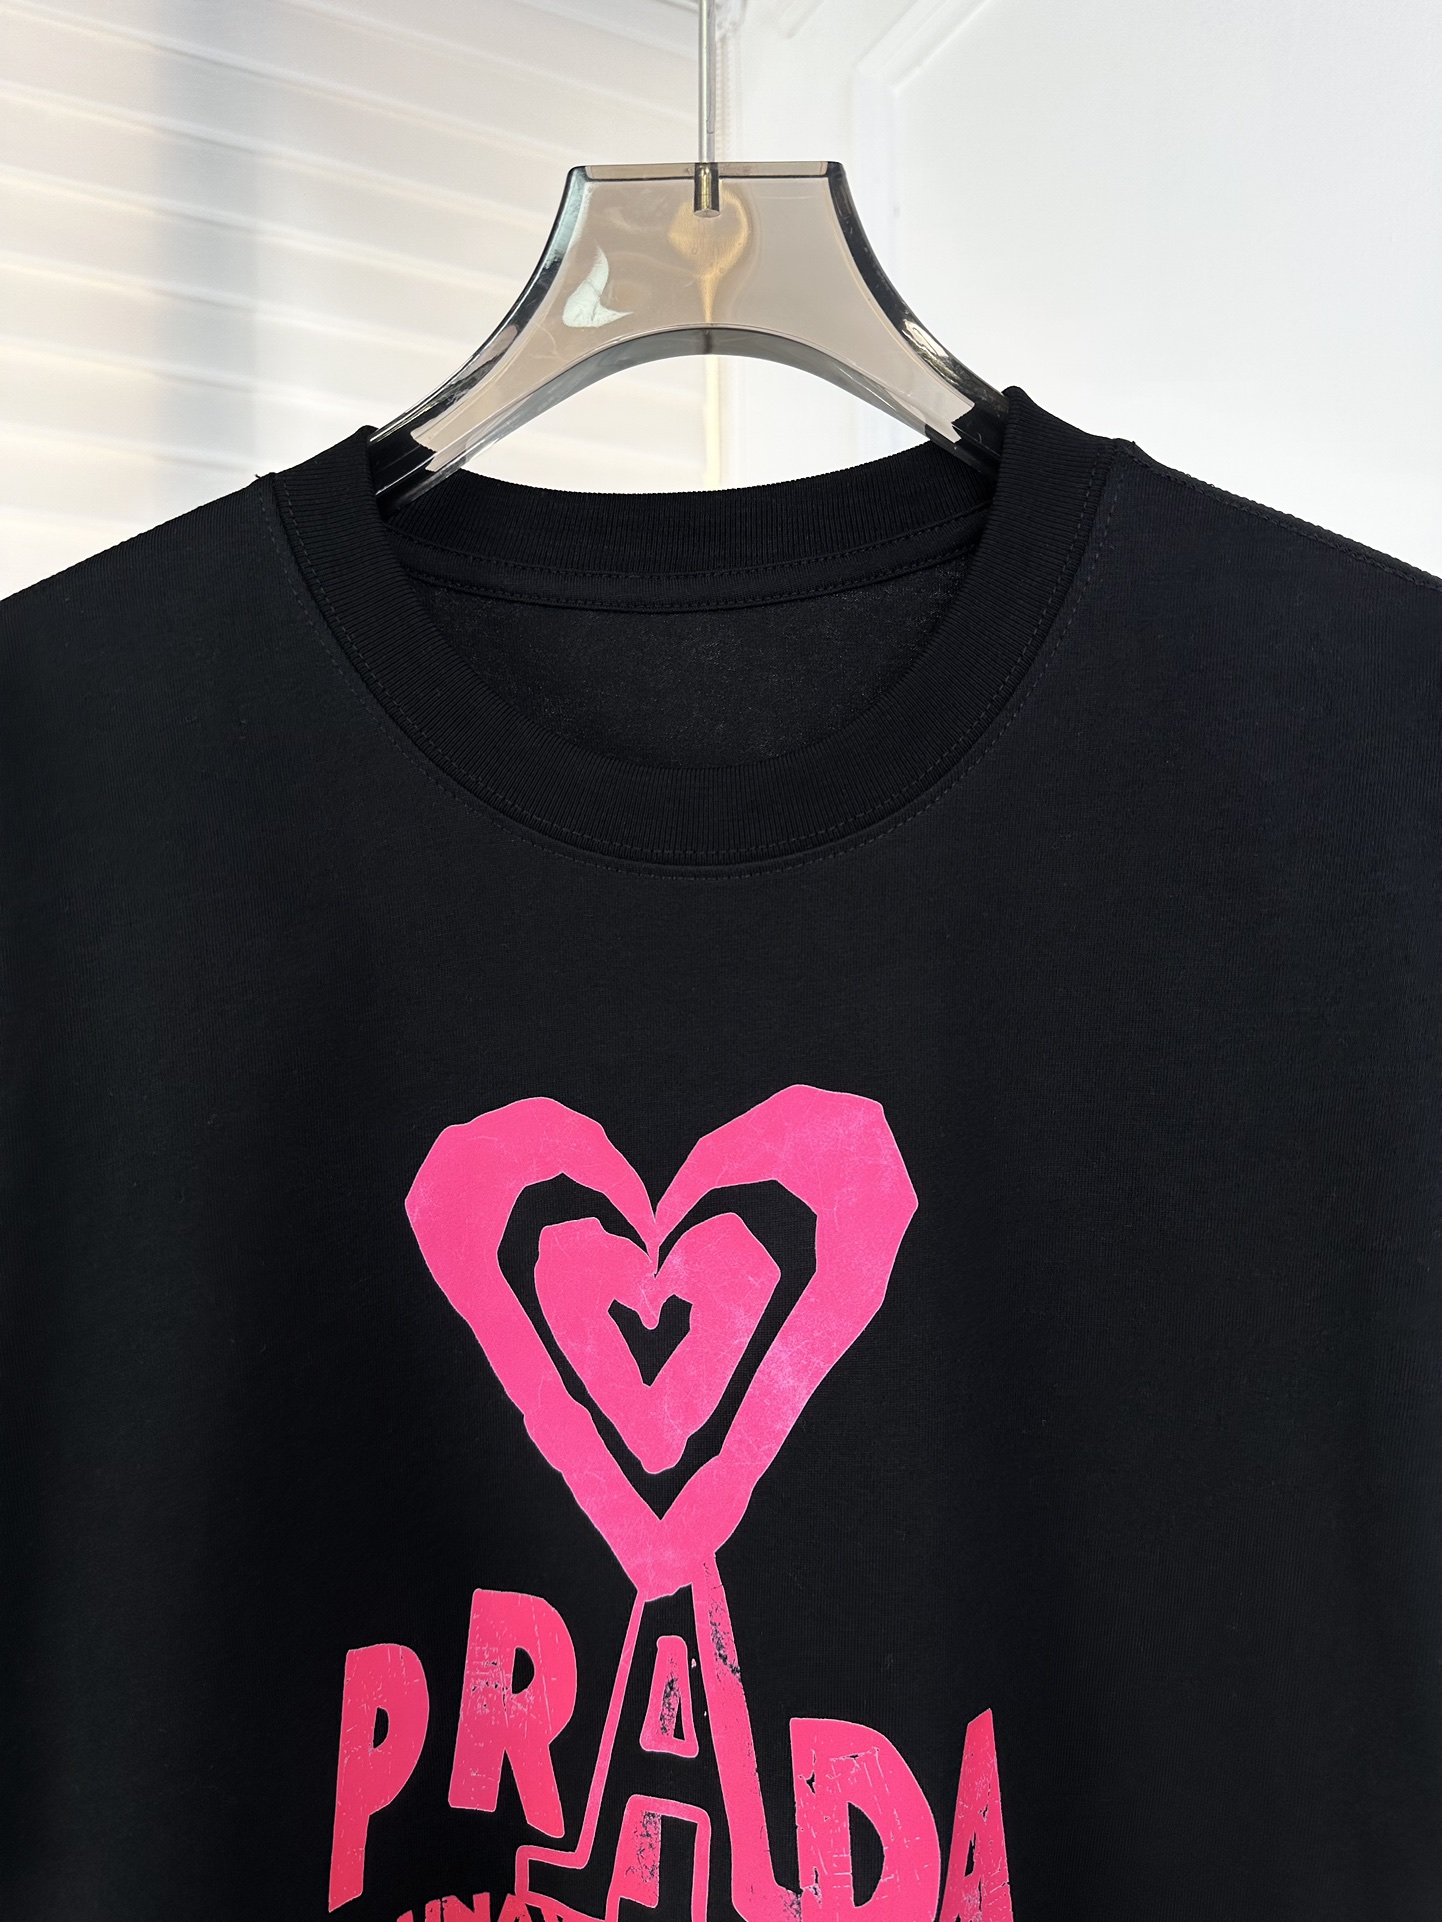 ss早春上新款短袖T恤PR*爱心字母logo是独家设计款宽松版型上身随意慵懒正确定织定染面料高品质高克重